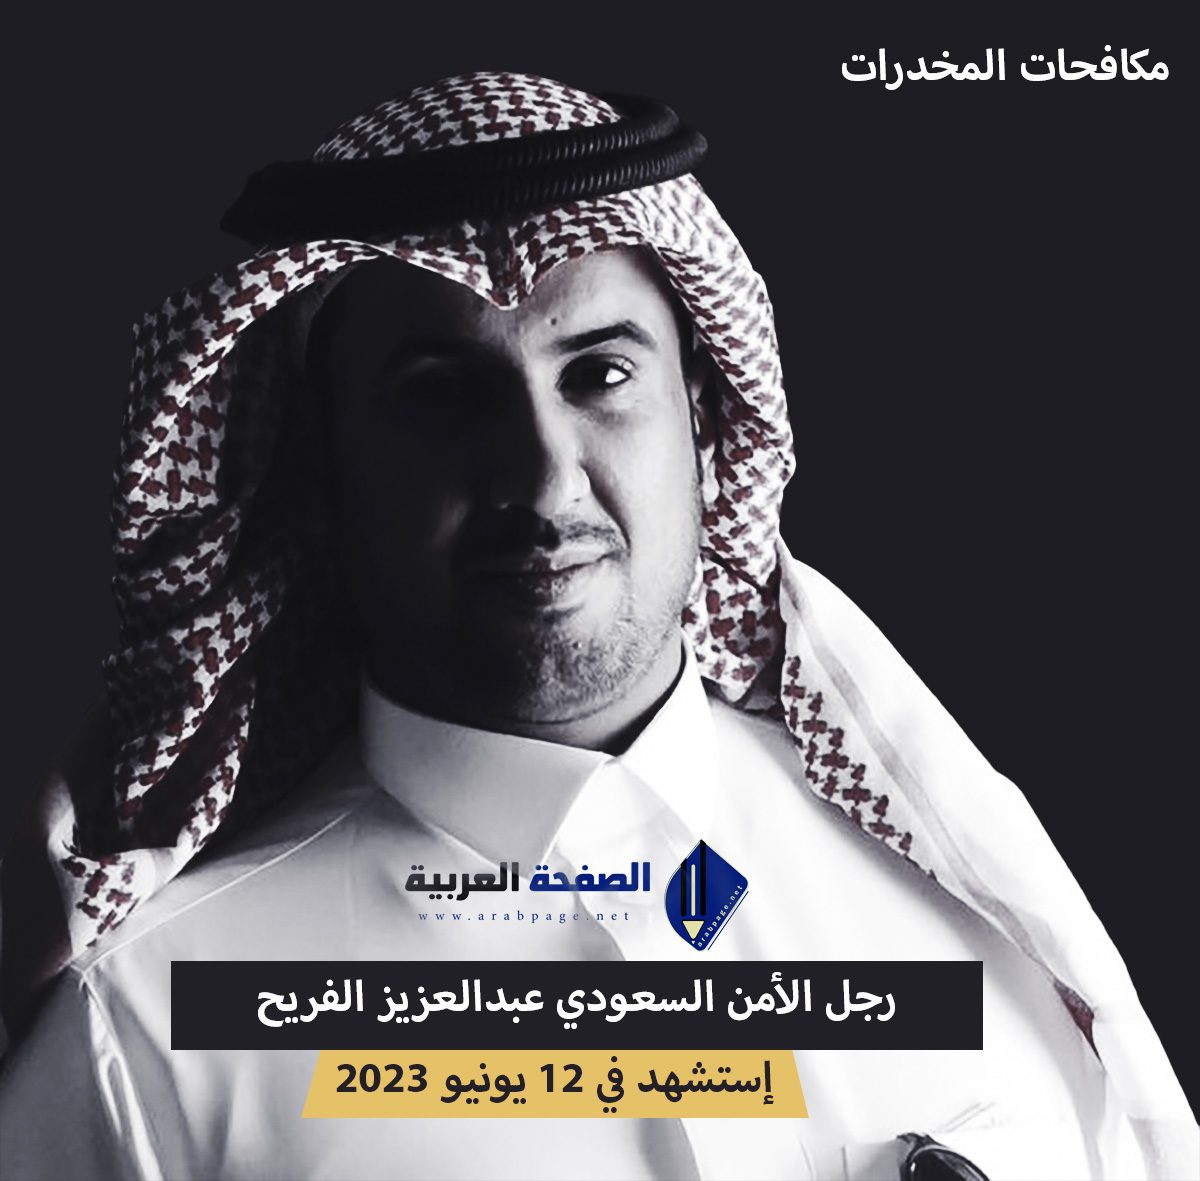 من هو عبدالعزيز الفريح وماهو سبب وفاة إستشهاد رجل الأمن السعودي